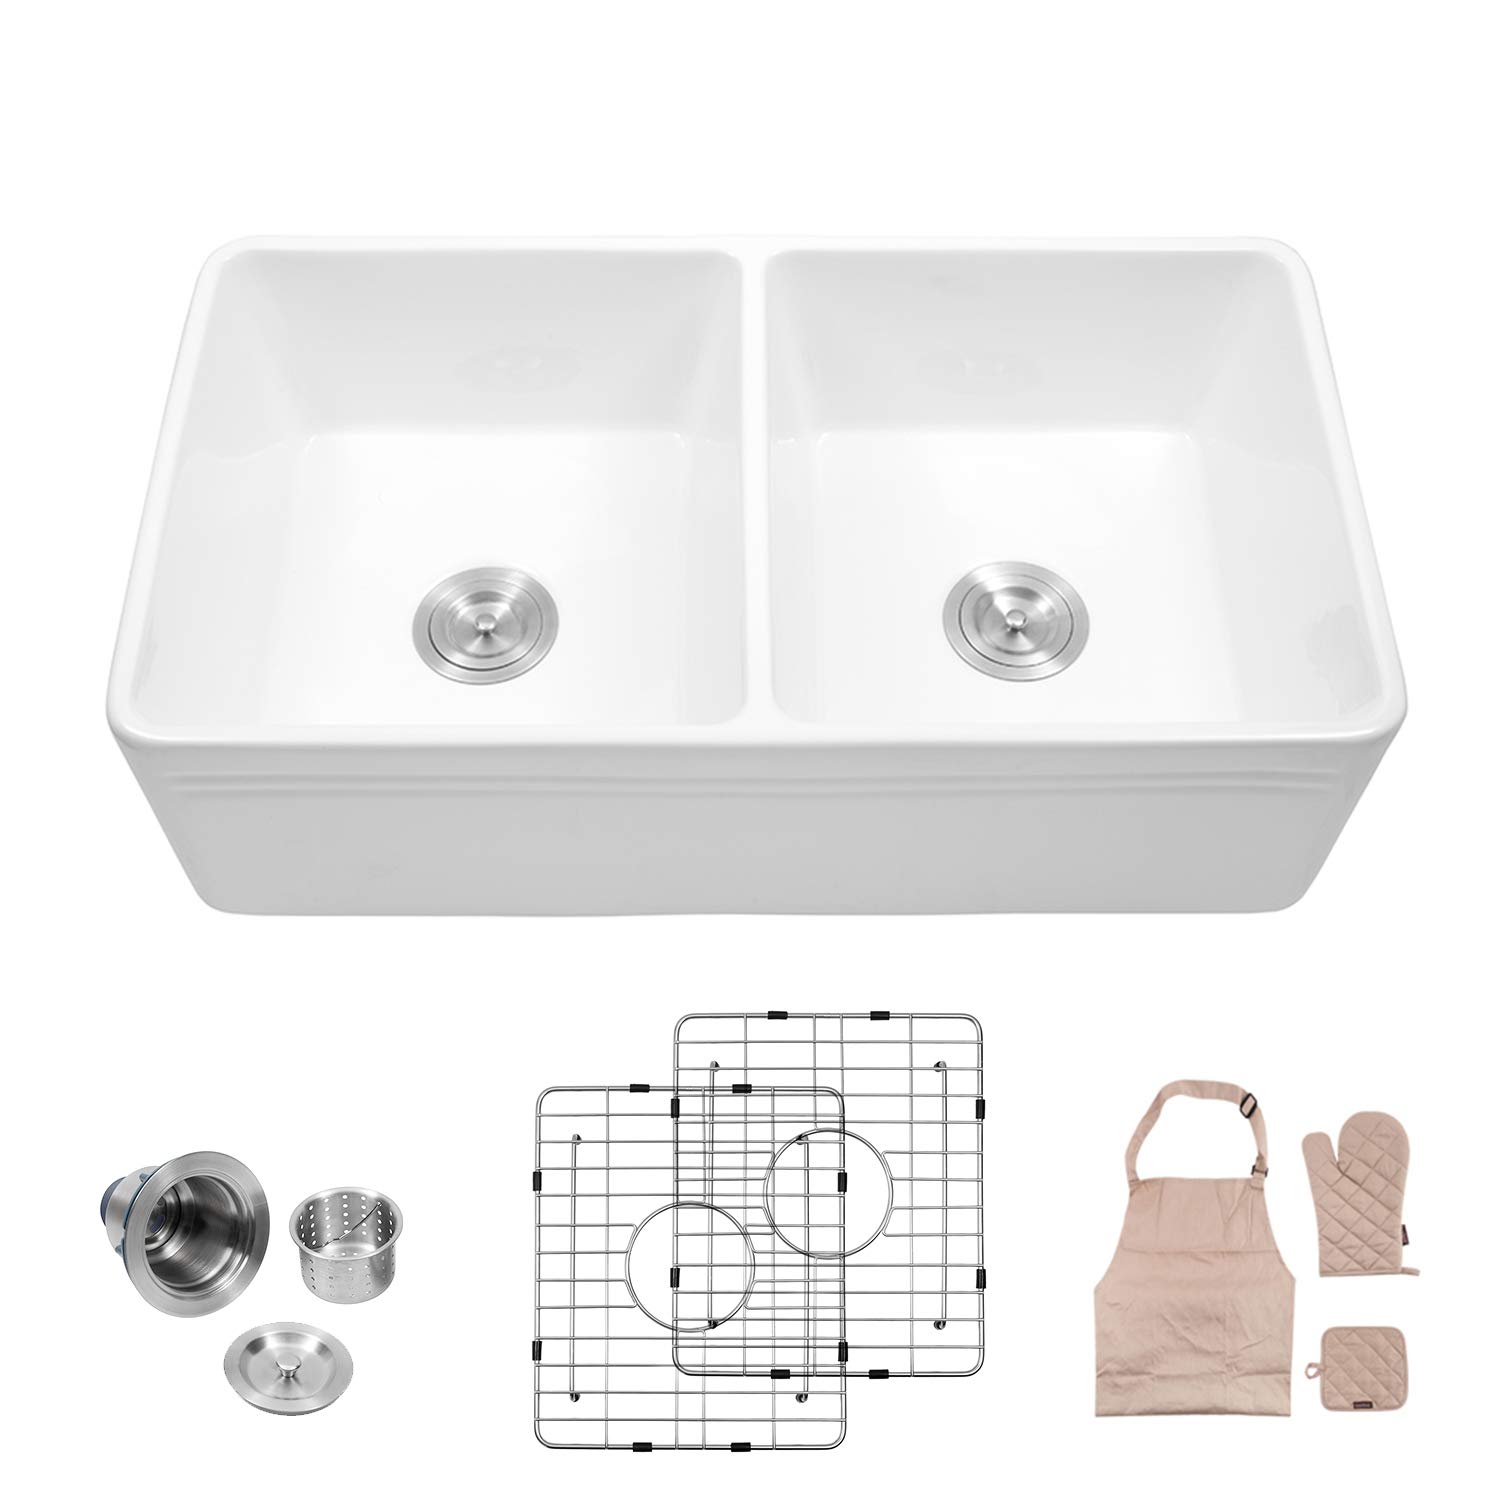 White Porcelain Ceramic Farmhouse Fireclay Apron-Front Kitchen Sink Sink